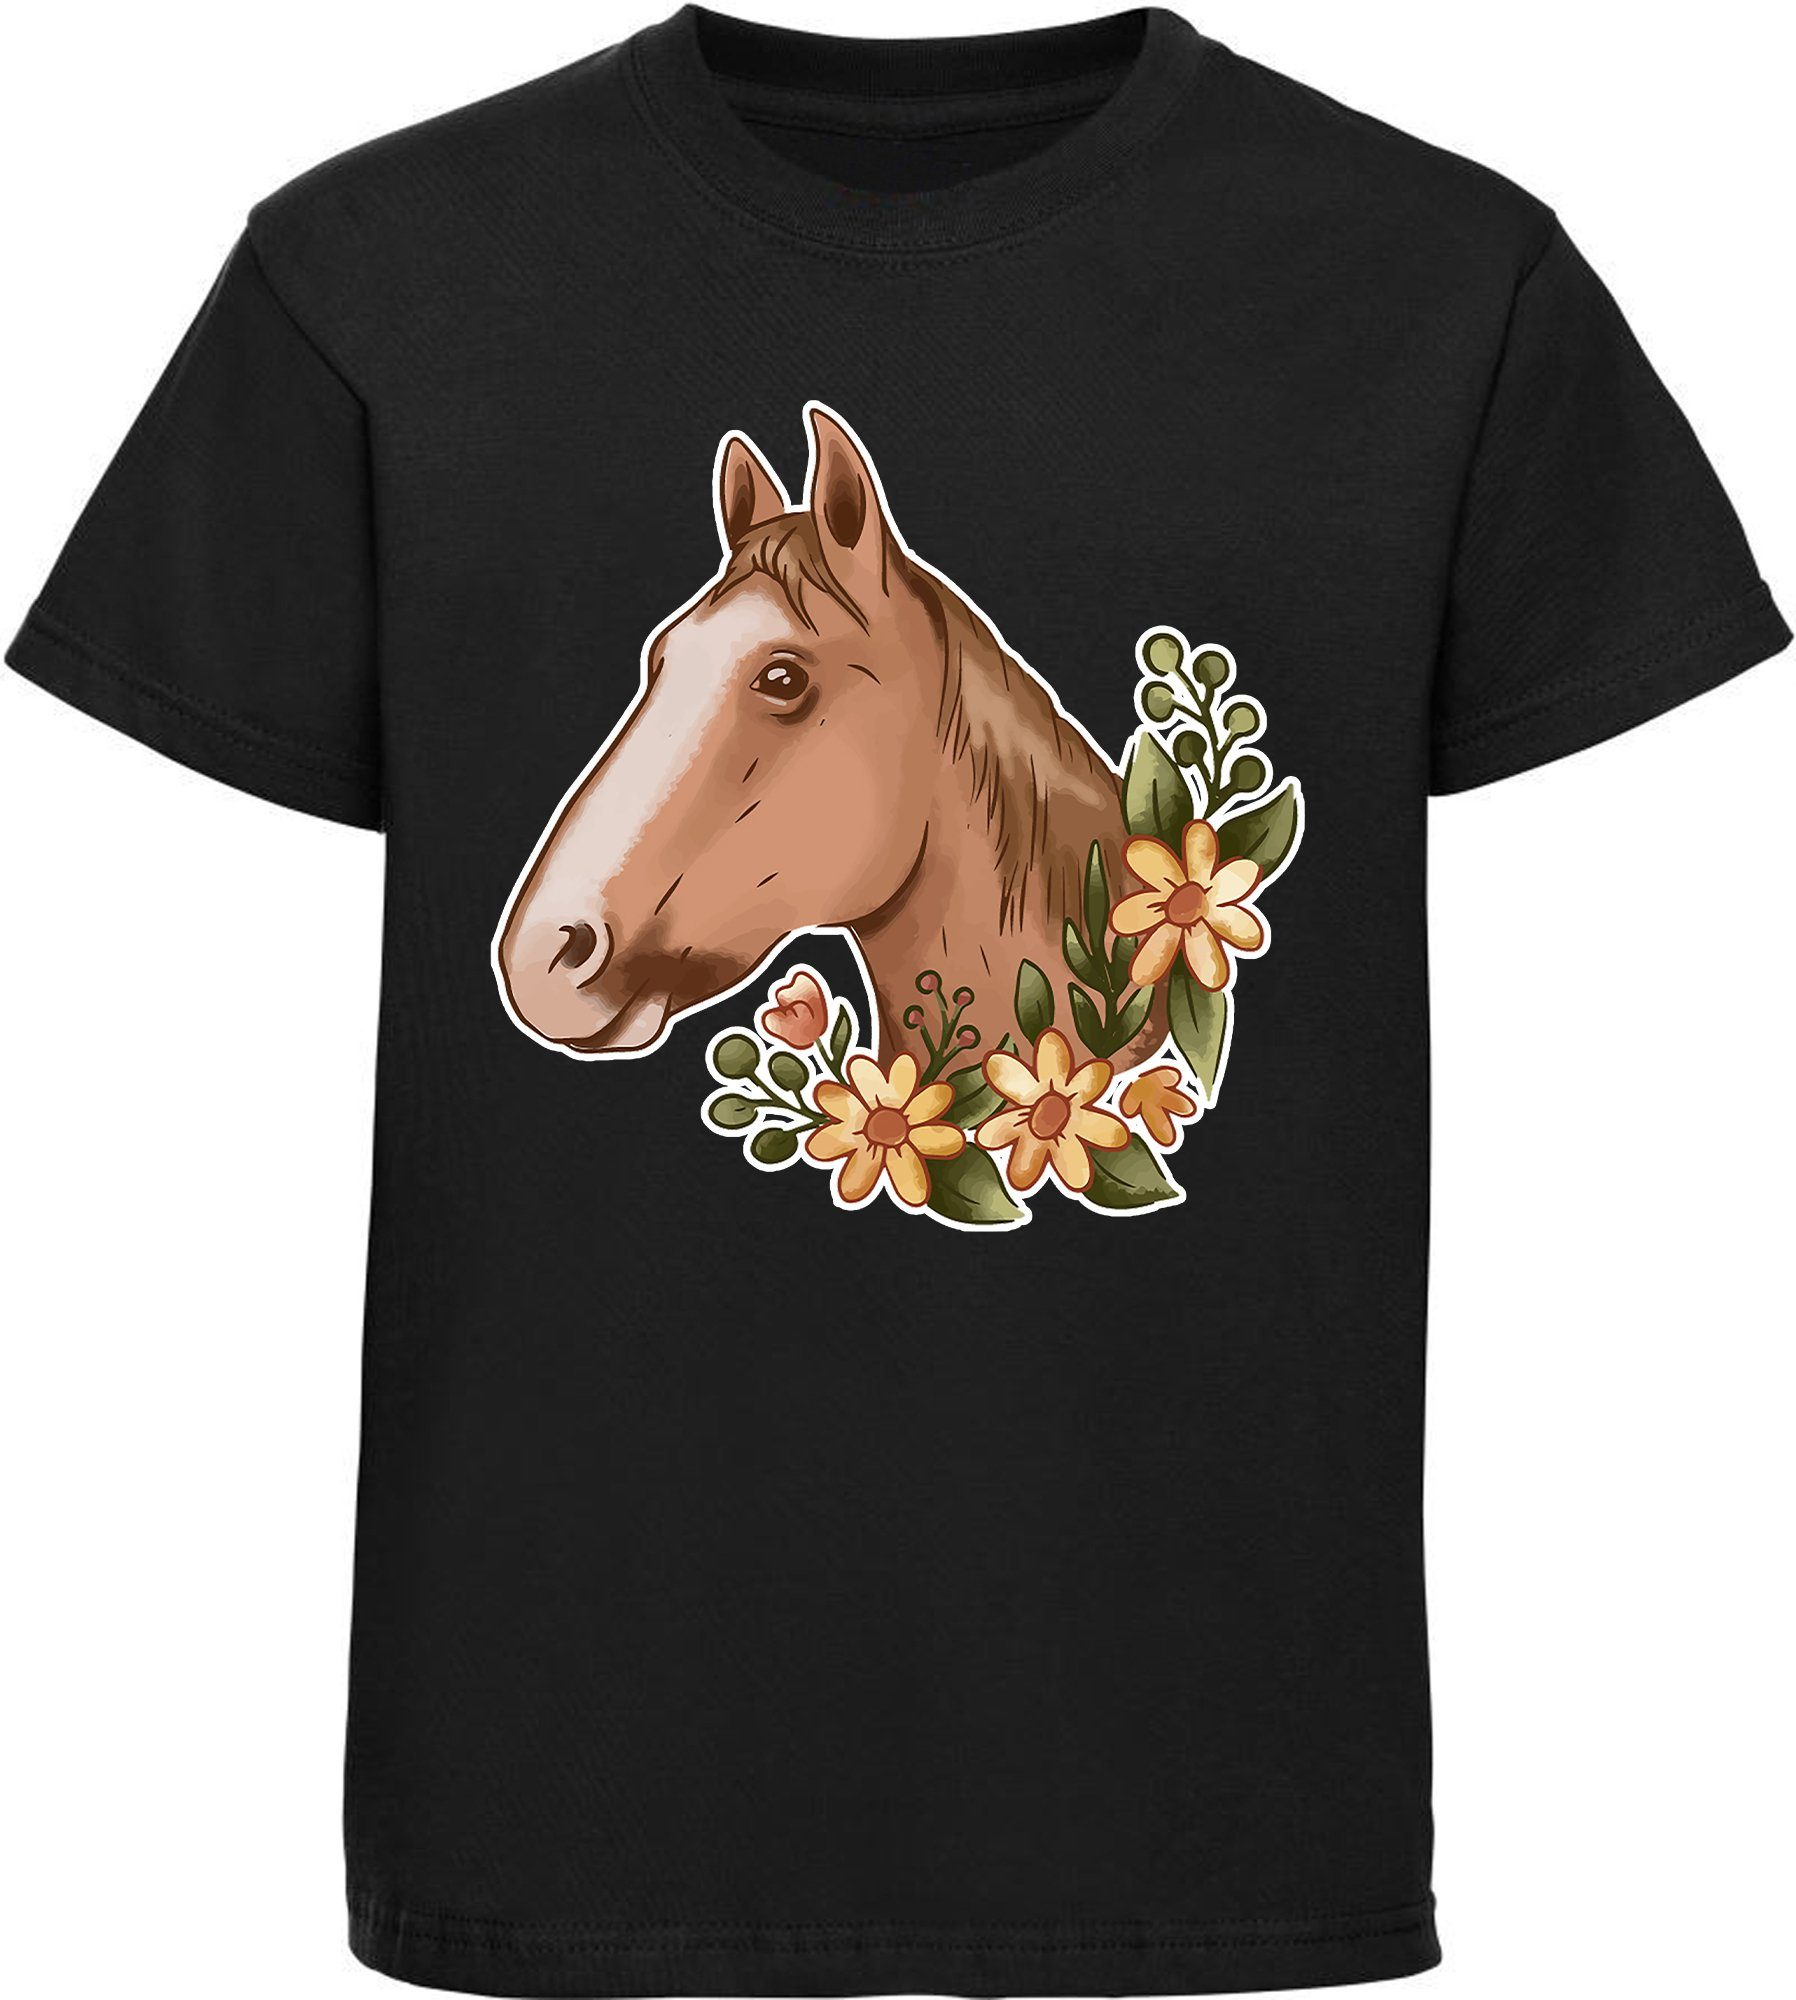 MyDesign24 Print-Shirt bedrucktes Kinder Mädchen T-Shirt - Hellbrauner Pferdekopf und Blumen Baumwollshirt mit Aufdruck, i181 schwarz